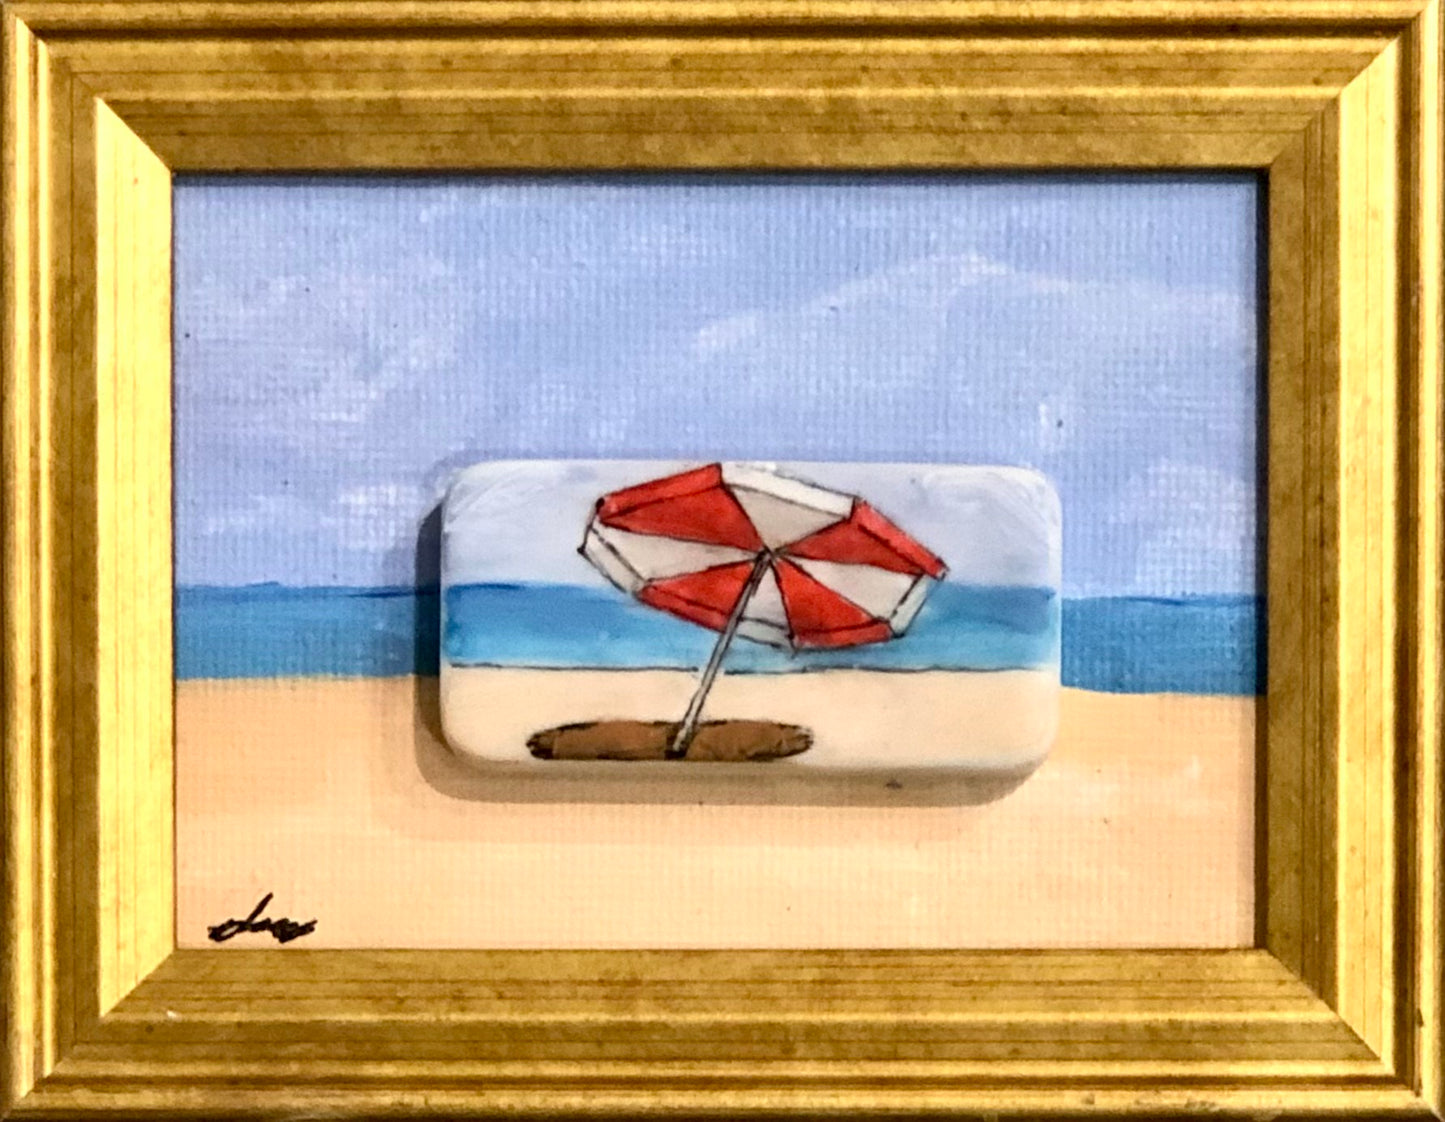 Beach Umbrella 2